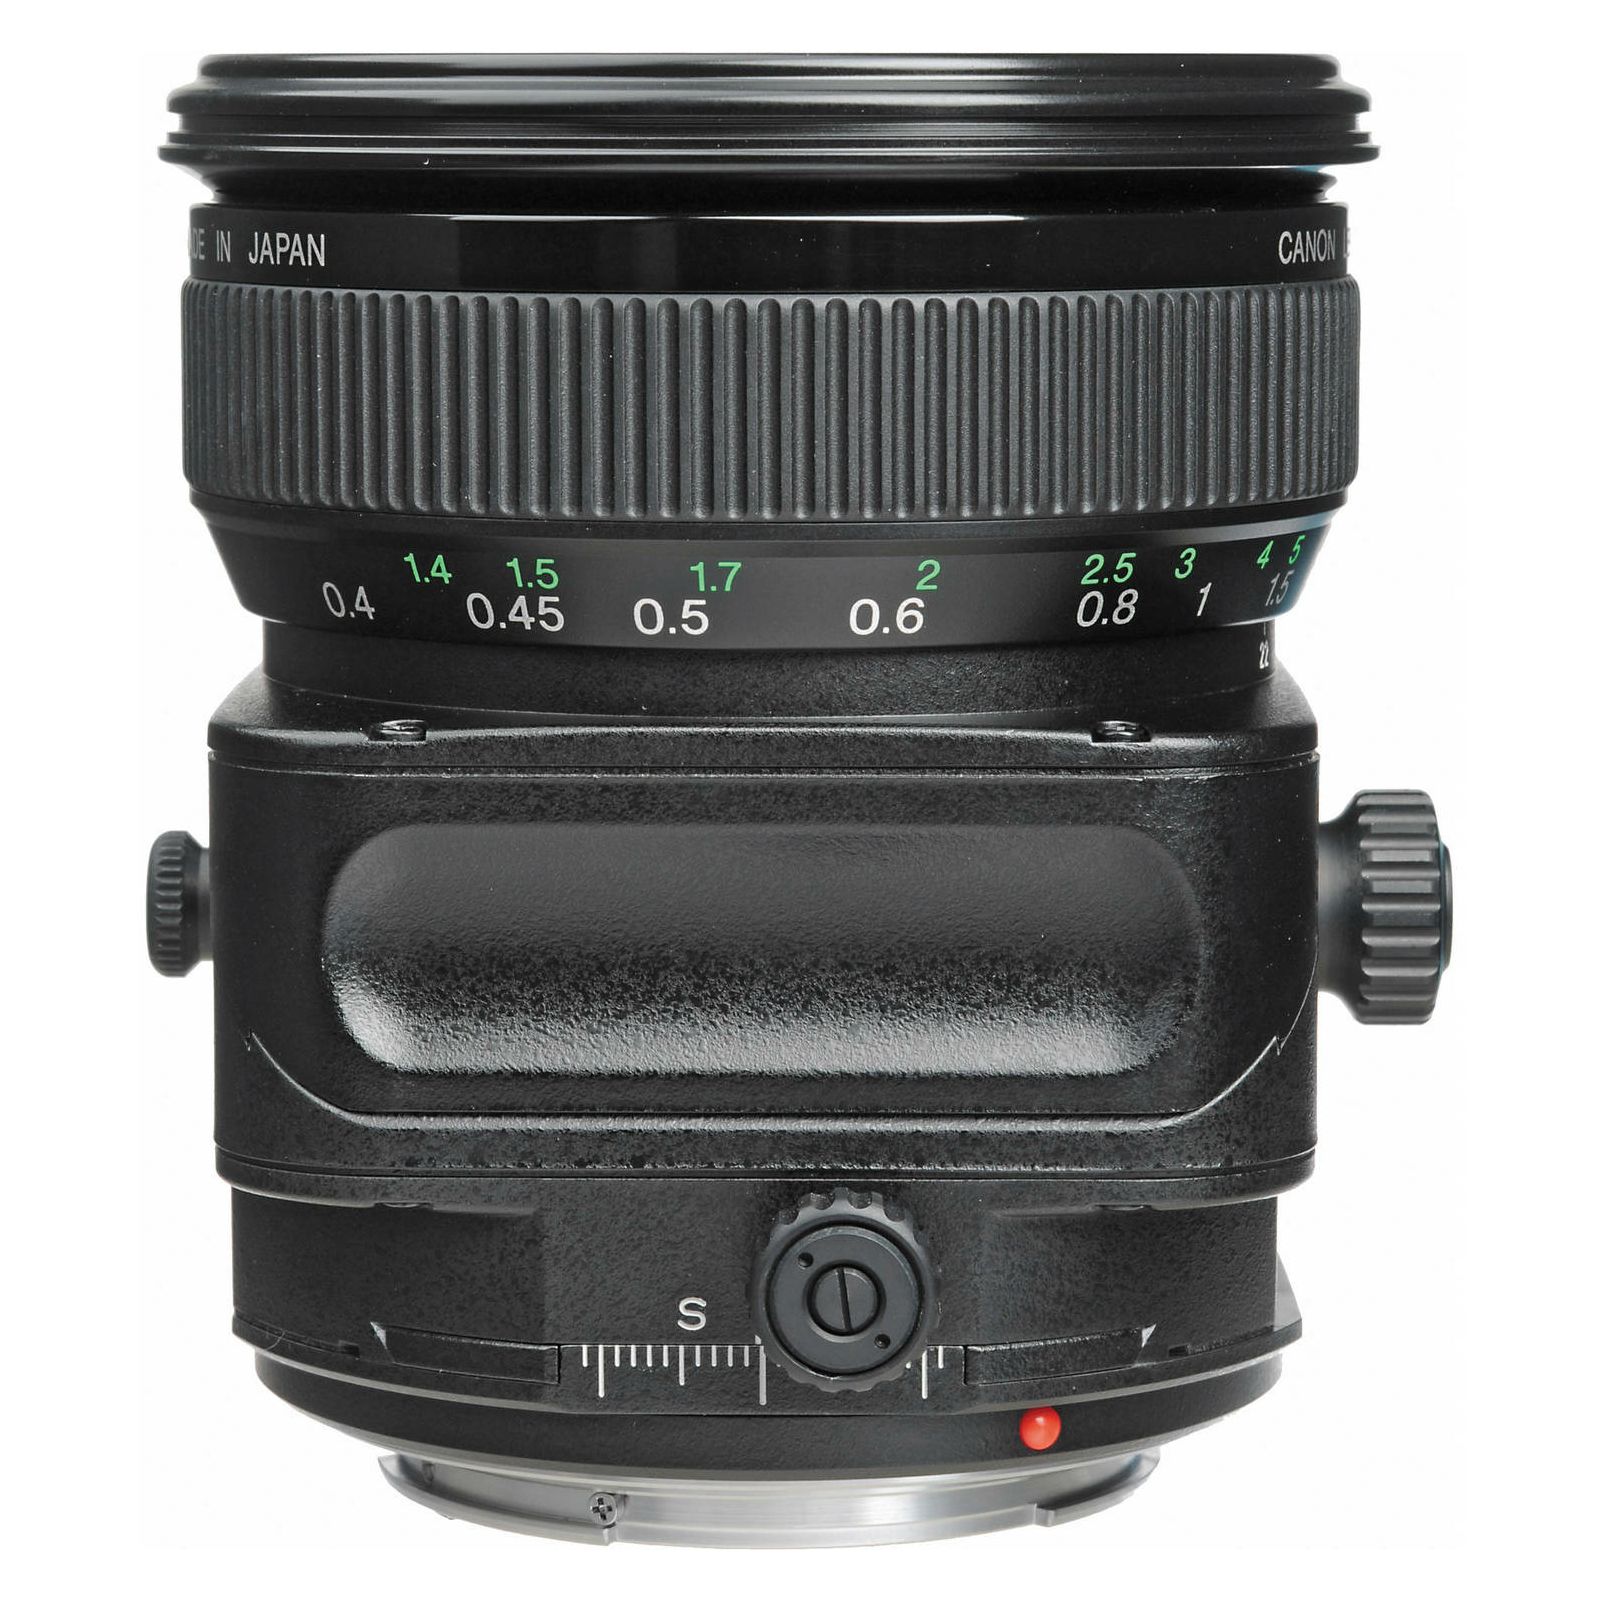 Canon TS-E 45mm f/2.8 tilt shift objektiv lens TS 45 2.8 1:2,8 (2536A019AA)